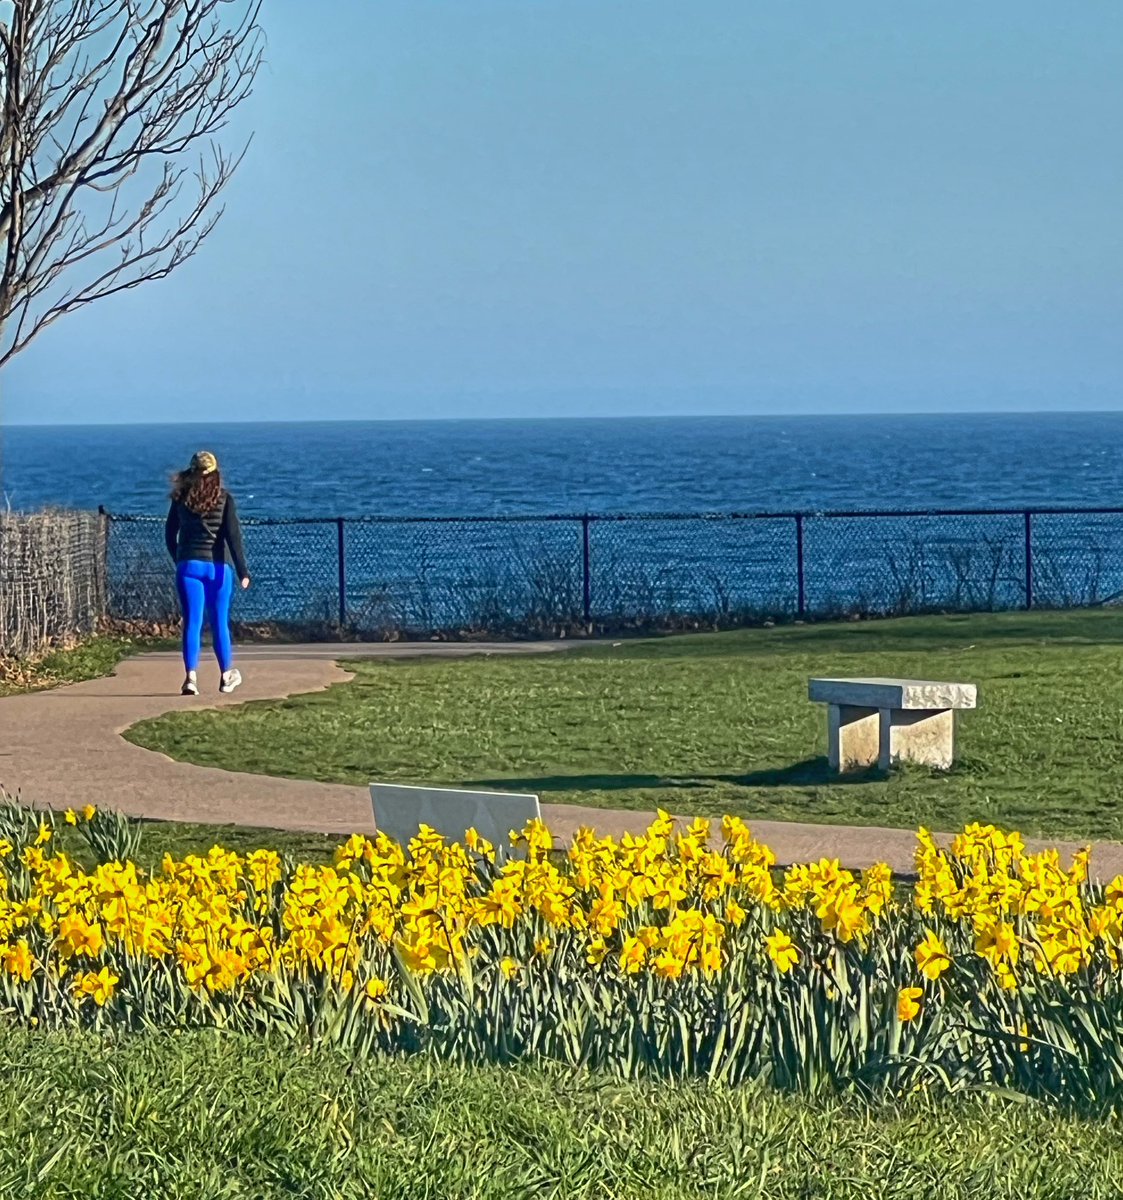 #DaffodilDays #RhodeIsland #CliffWalk #Newport